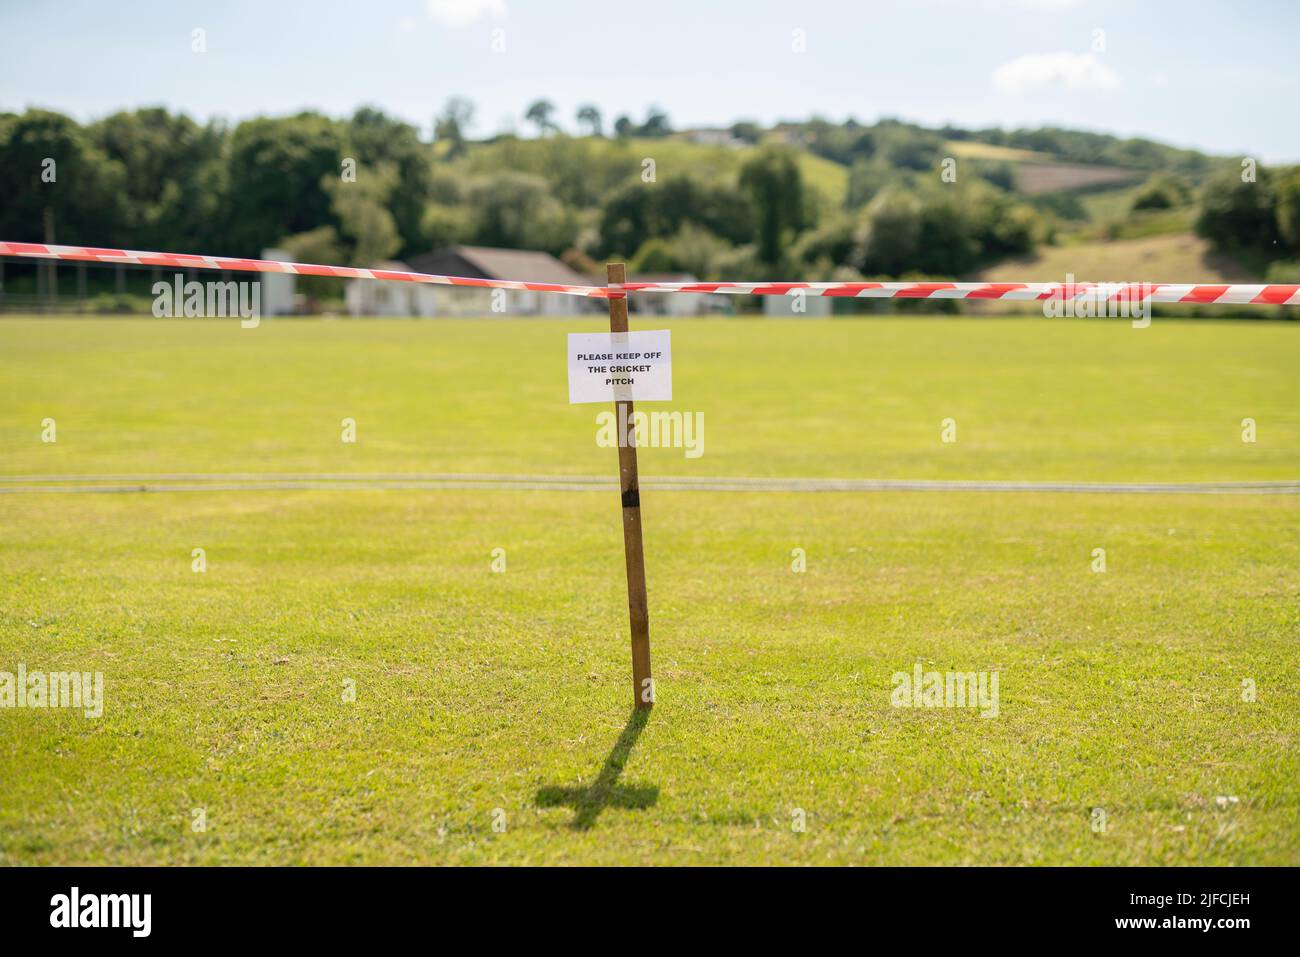 Un panneau indiquant « Please Keep off the cricket pitch » avec bande d'avertissement dans un village rural. Banque D'Images